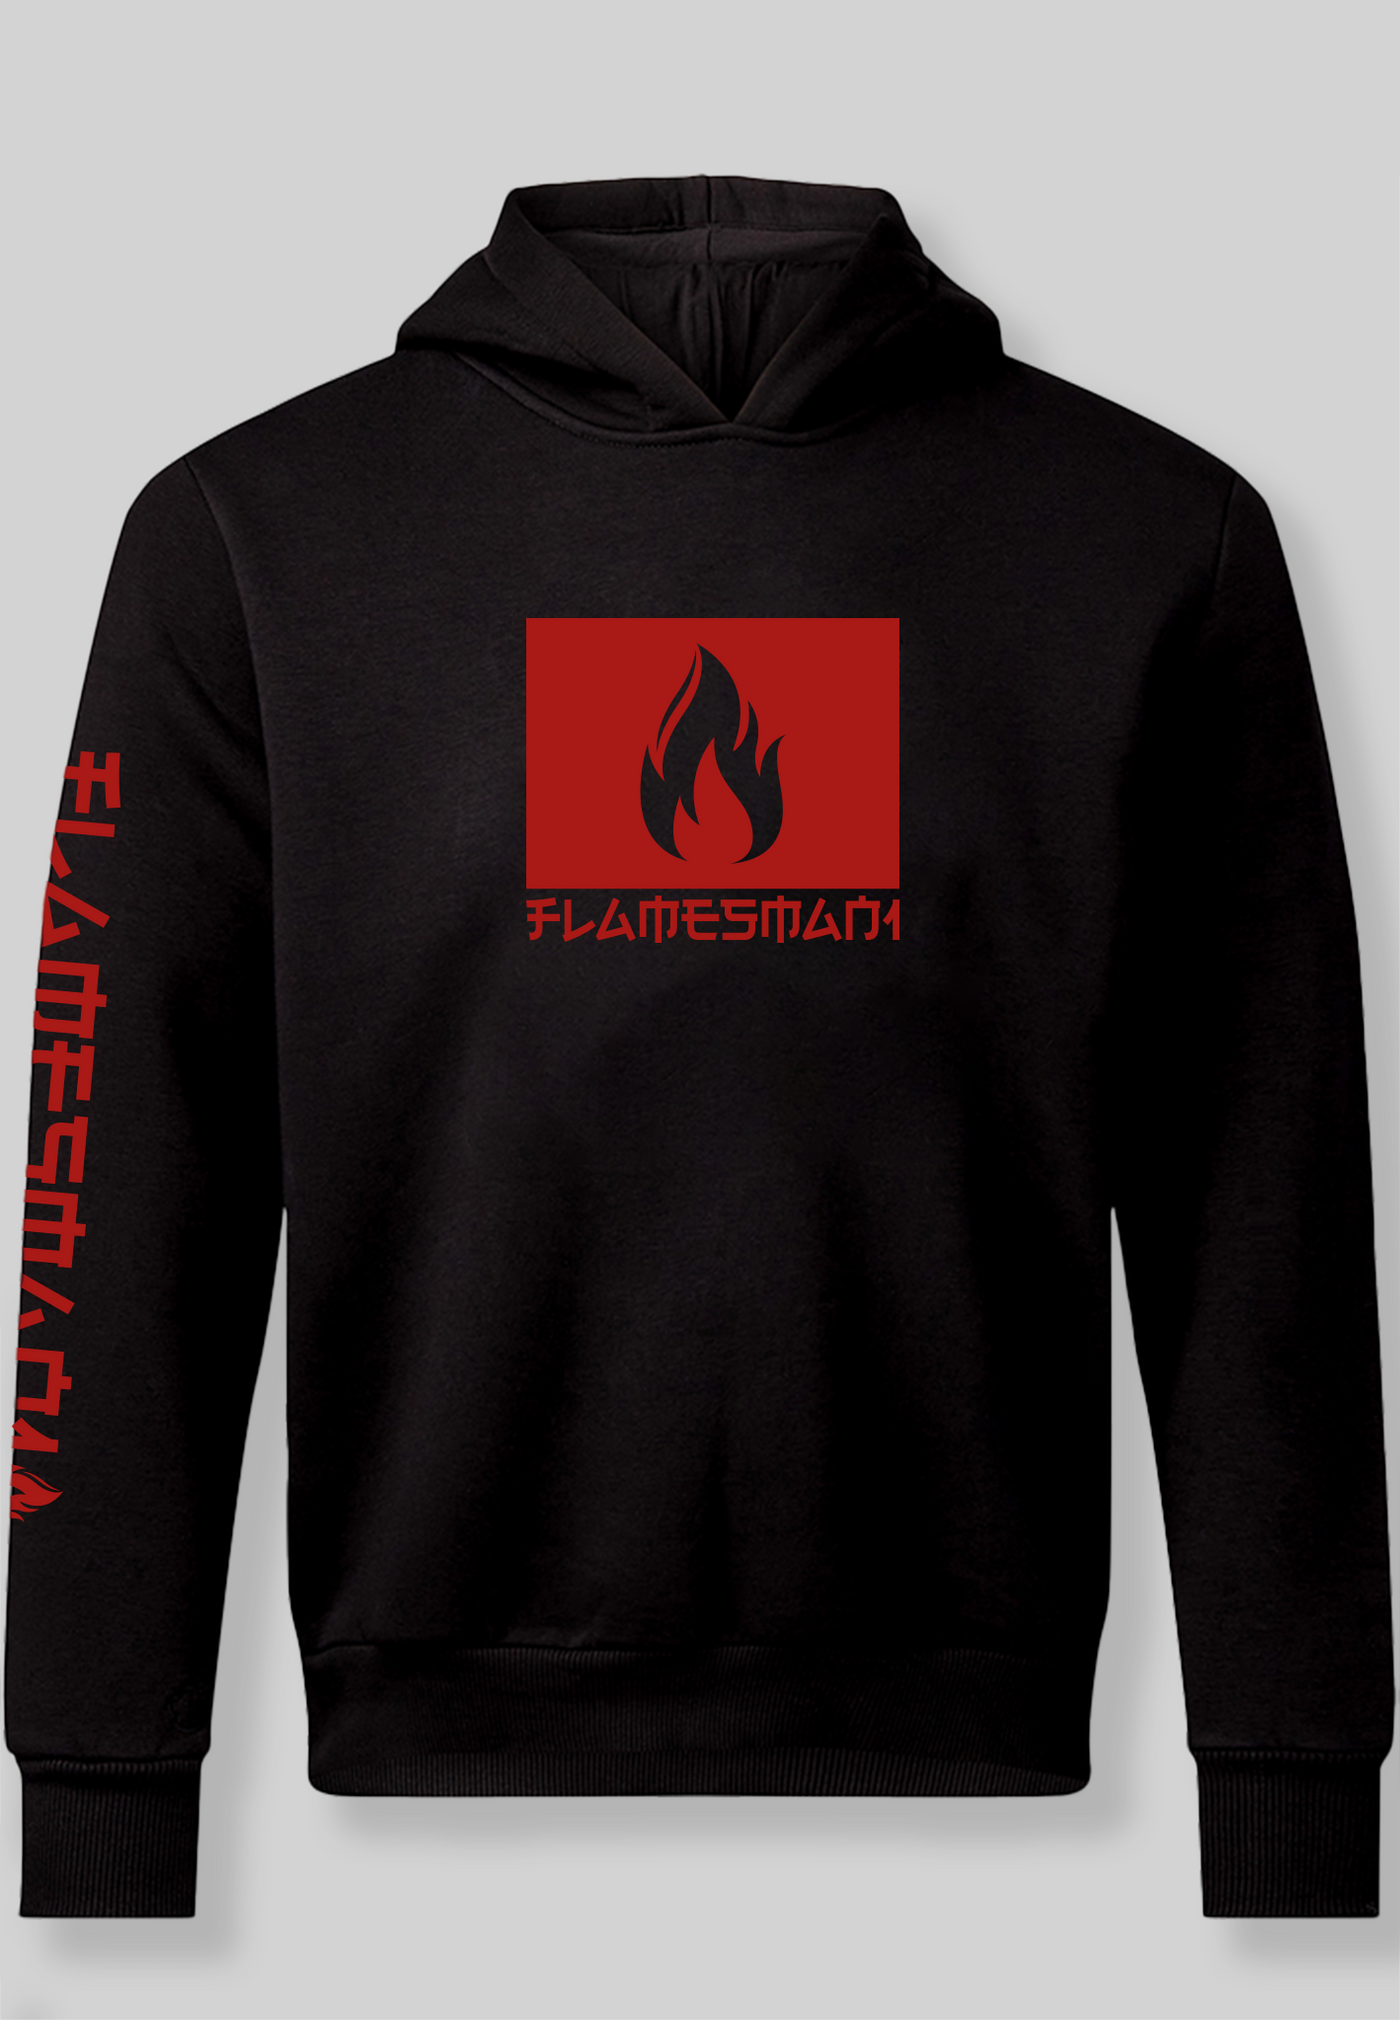 Flamesman1 - Fire 2.0 / Black Hoodie